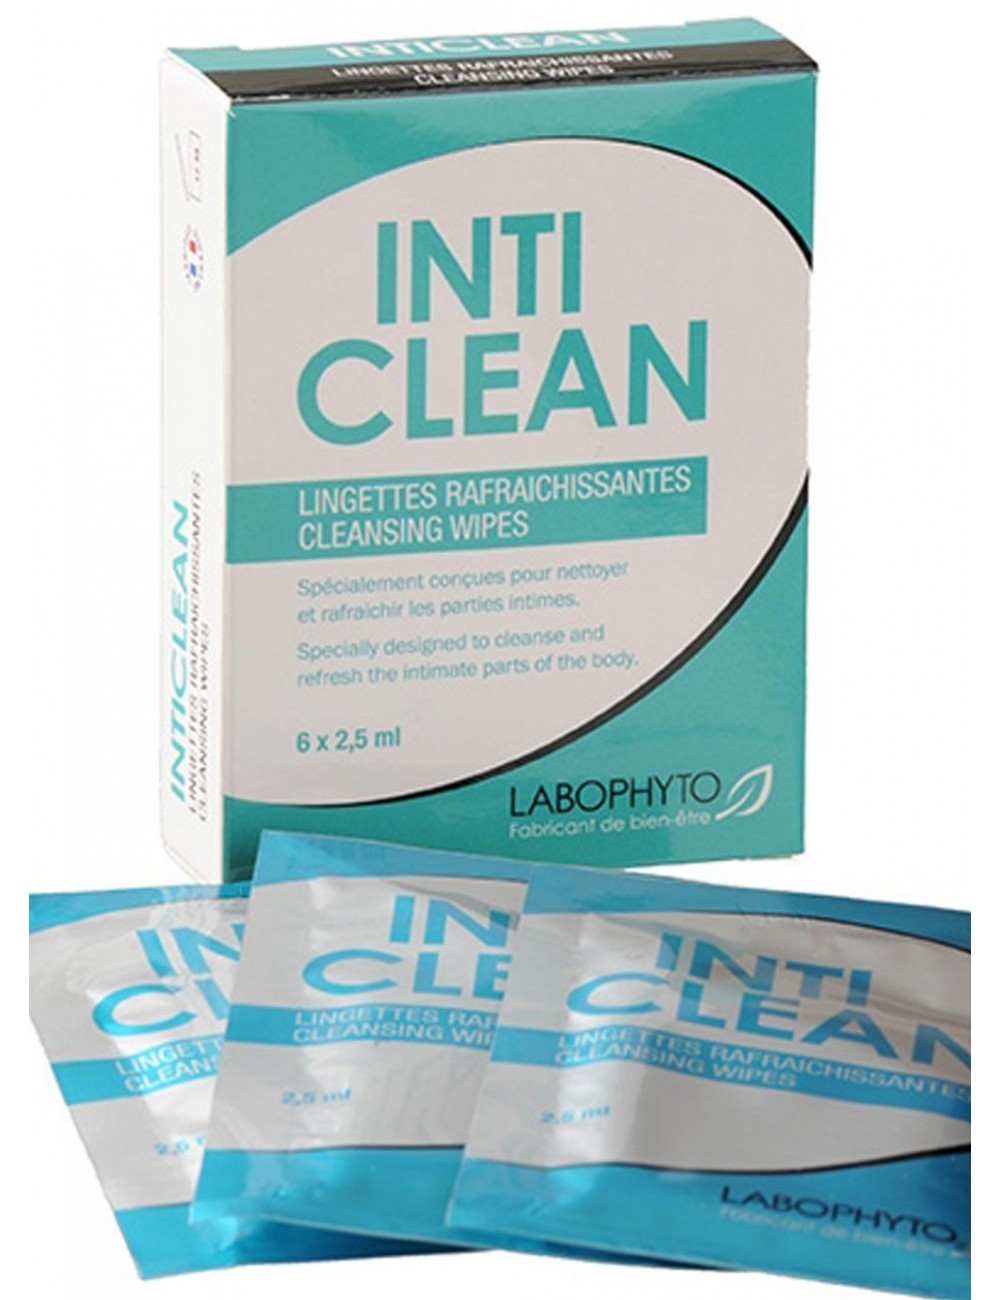 IntiClean 6 lingettes pour une hygiène parfaite - LAB-3469 - Plaisirs Intimes - Labophyto